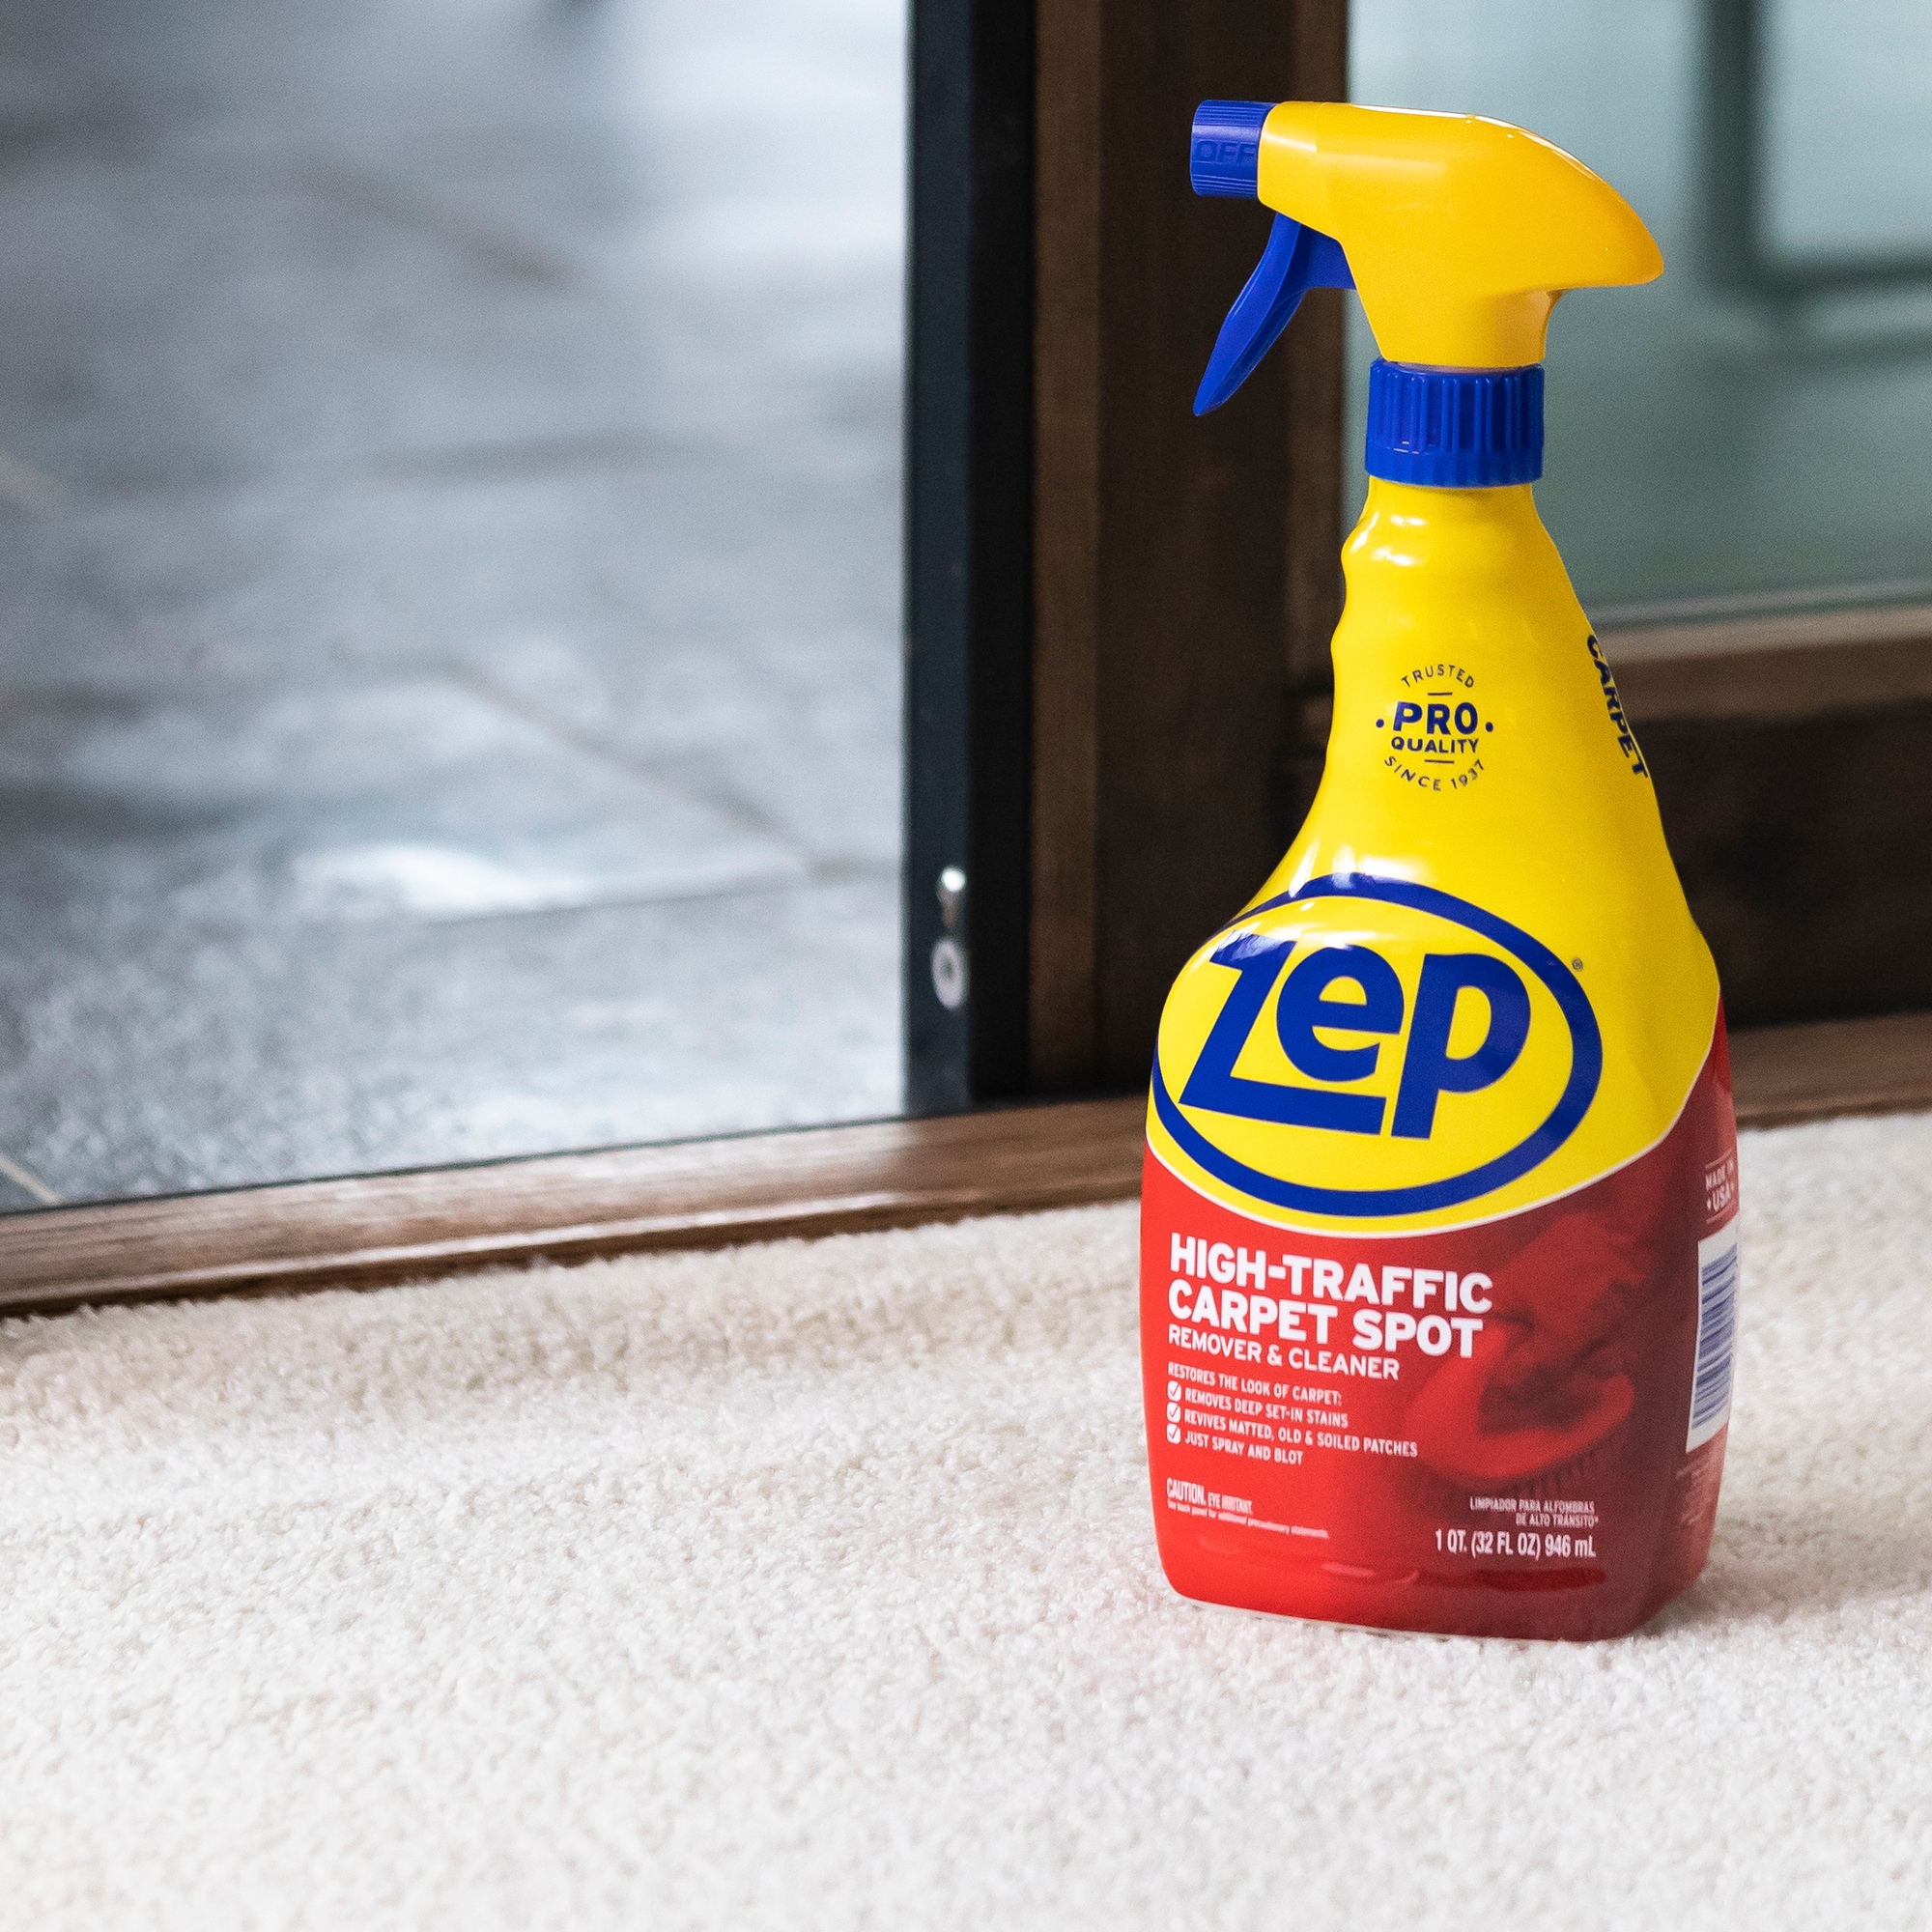 Zep Commercial Carpet Shampoo, Premium - 128 fl oz